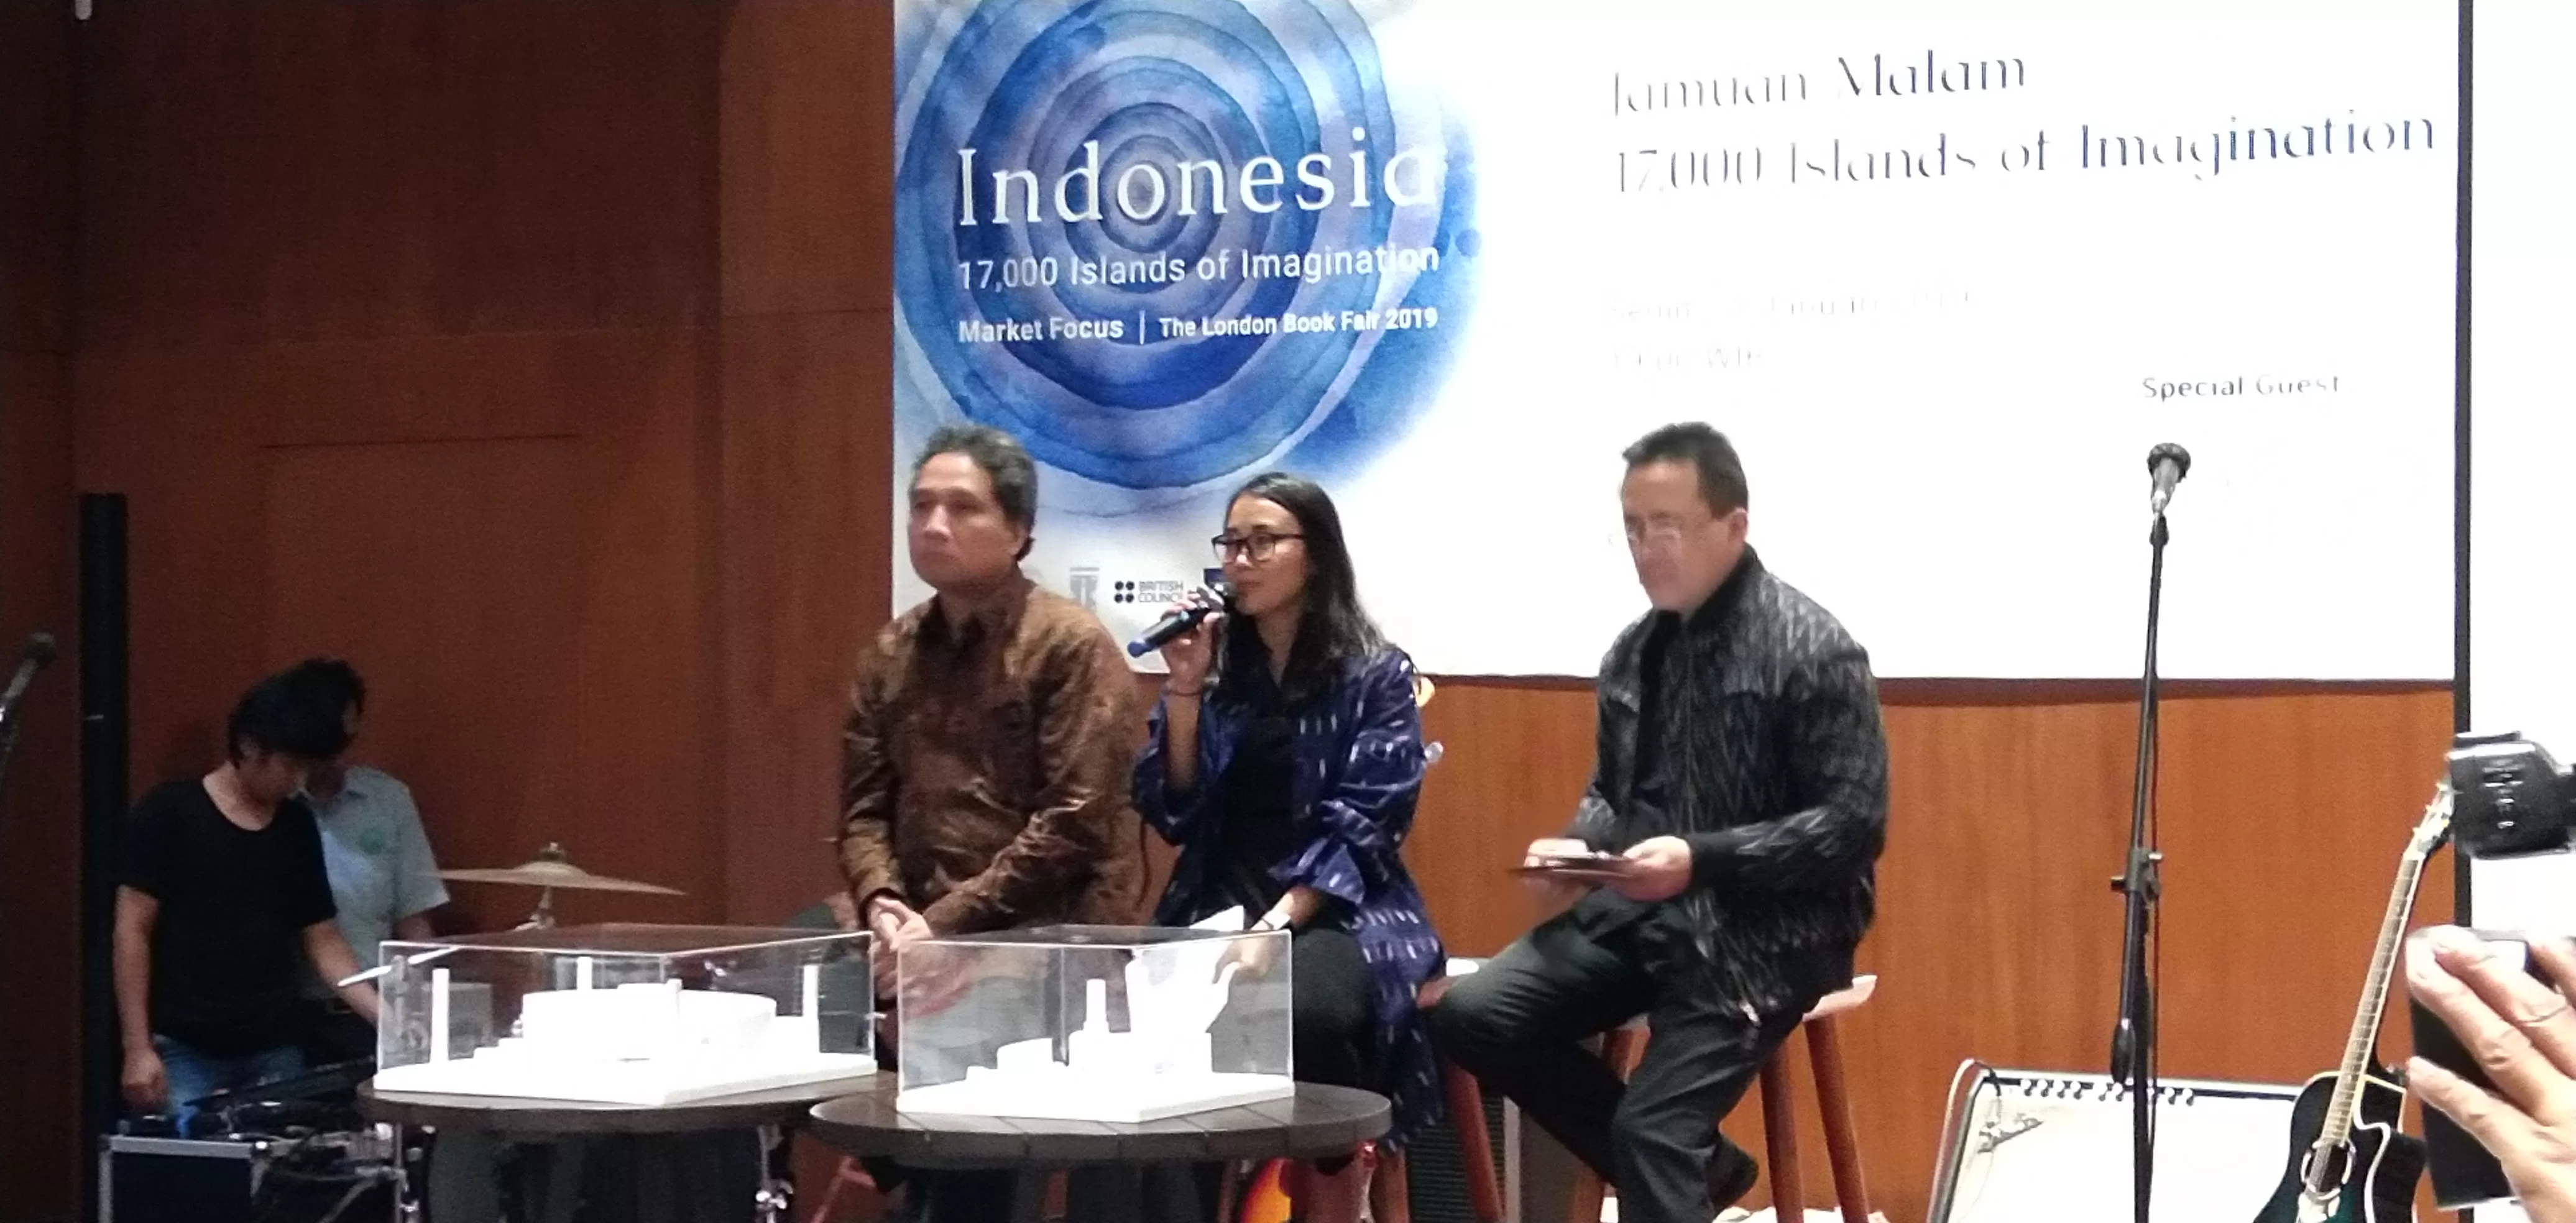 (kiri - kanan) Dirjen Kebudayaan Kemdikbud, Hilmar Farid, Ketua Harian Panitia Pelaksana  Kegiatan Indonesia Market Focus untuk LBF 2019, Laura Bangun Prinsloo dan Kepala Badan Ekonomi Kreatif (Bekraf) Triawan Munaf dalam konferensi pers di Jakarta. (Foto : ist)